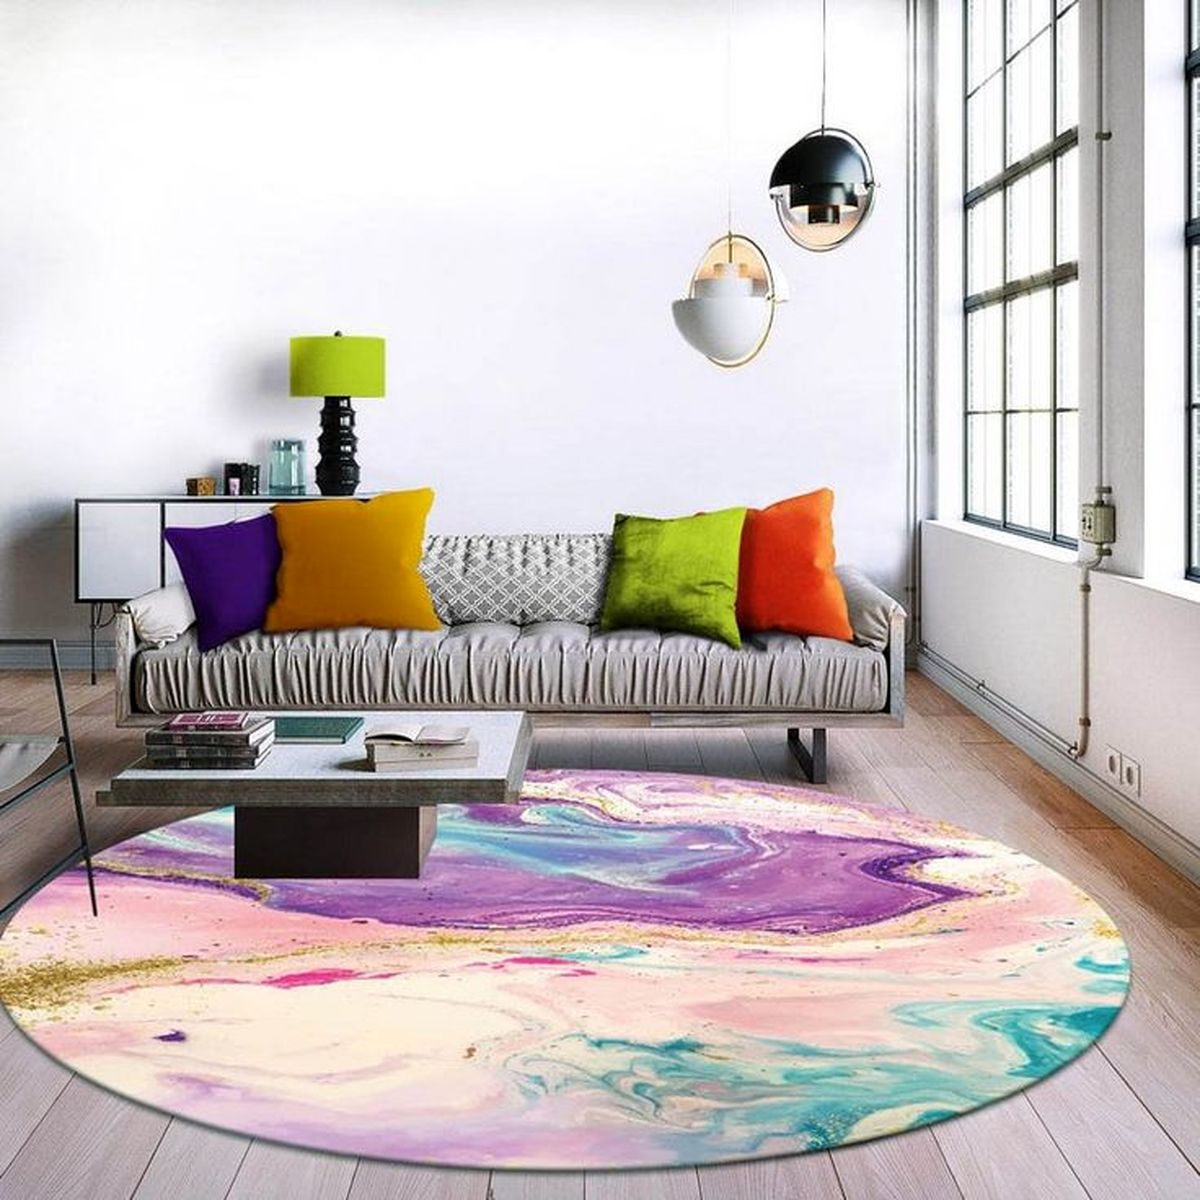 برای یه خونه رویایی با دکور خاص  از فرش های خاص هم استفاده کن؛ 